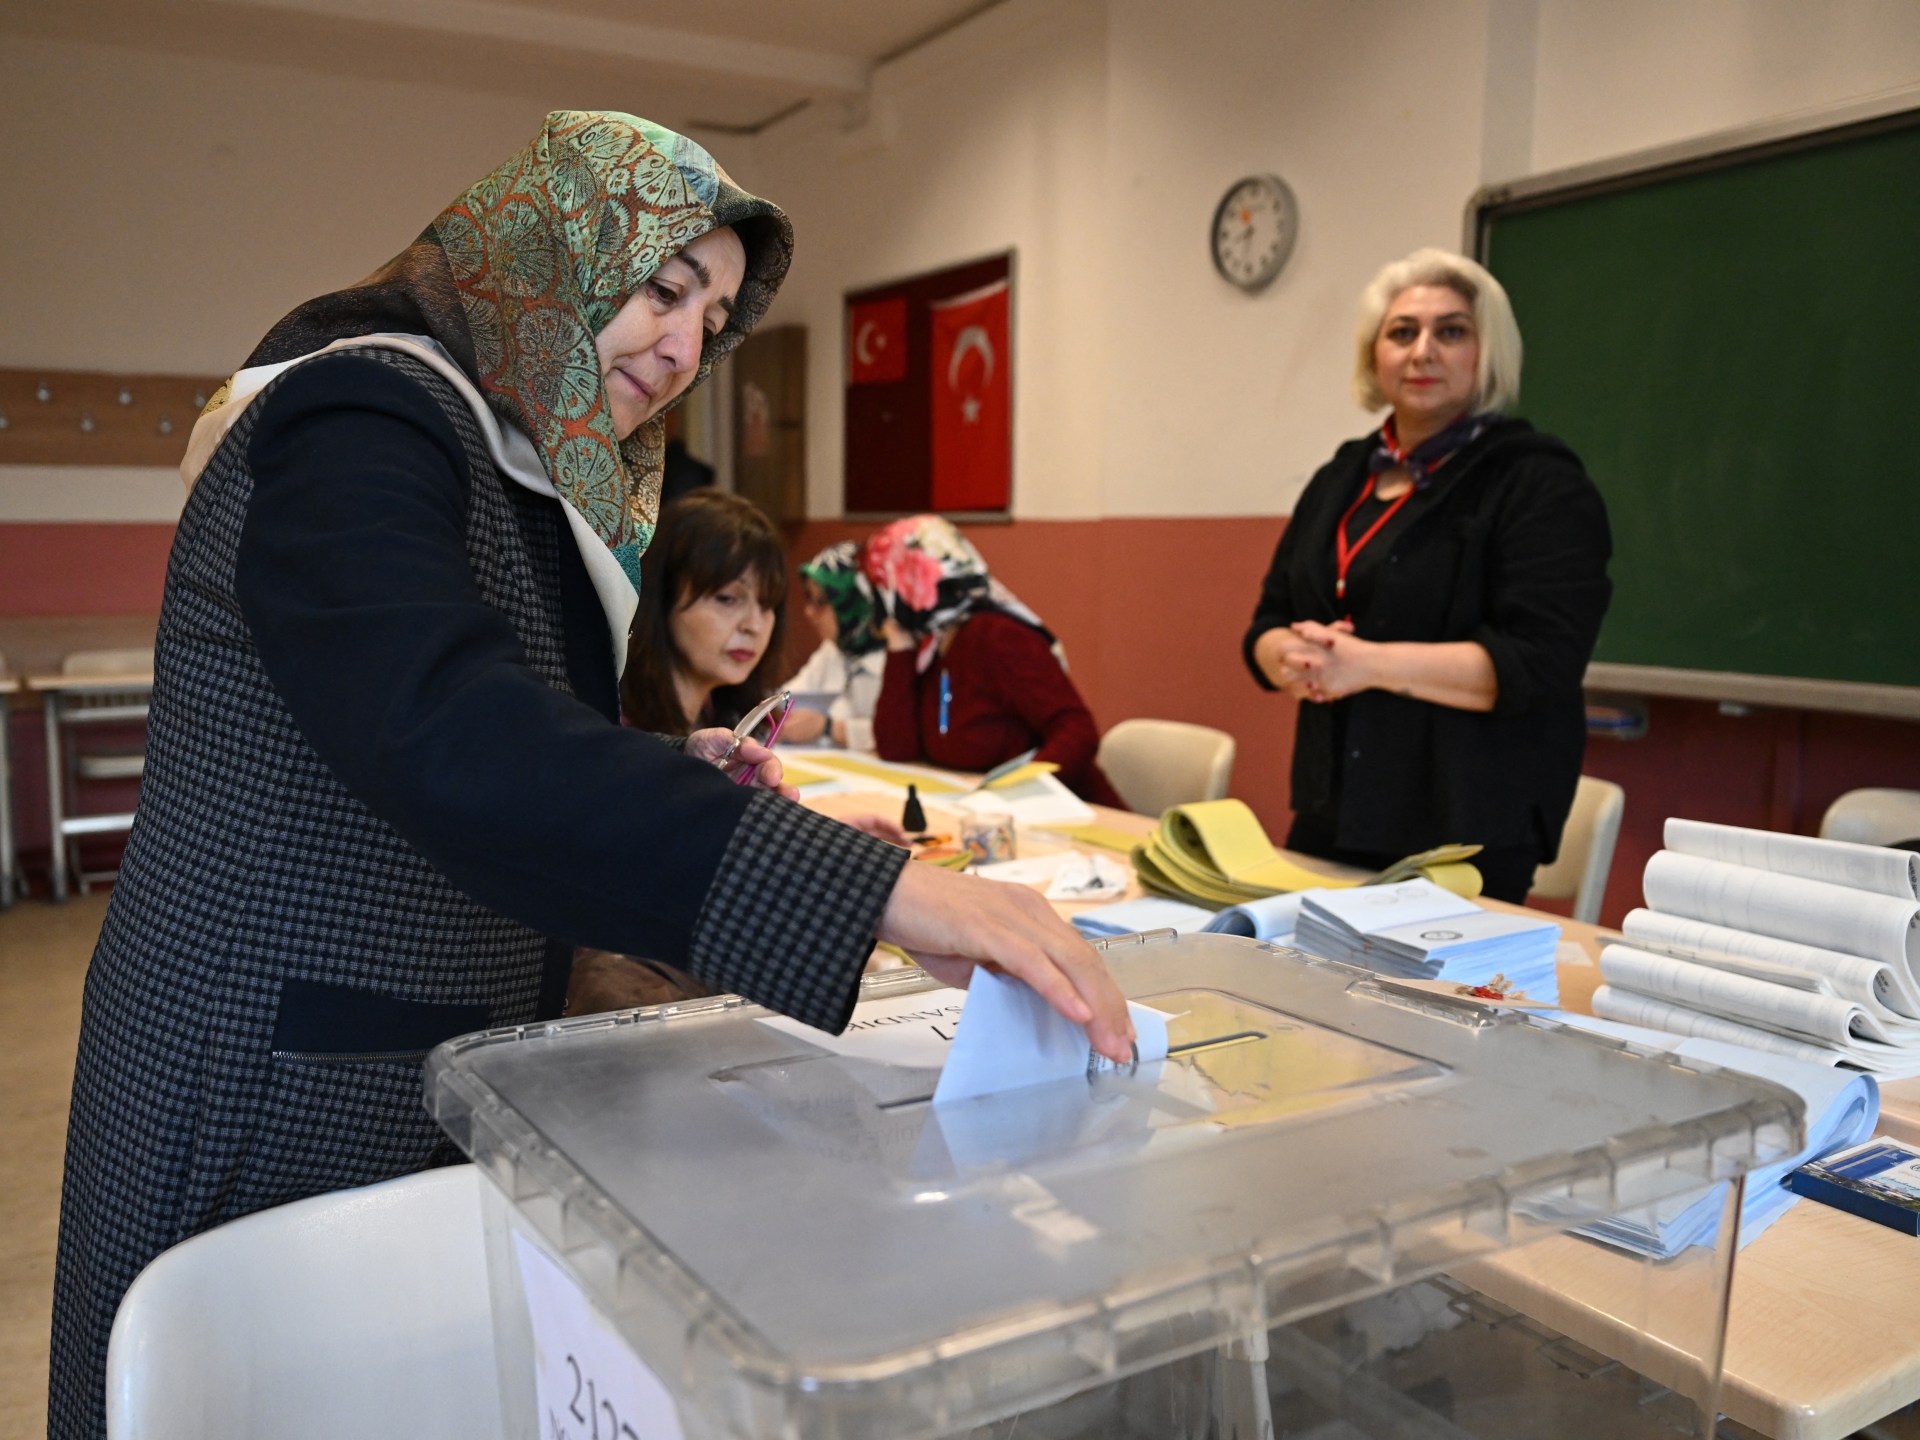 W Turcji rozpoczyna się głosowanie, które będzie sprawdzianem popularności Erdogana  Wiadomości wyborcze